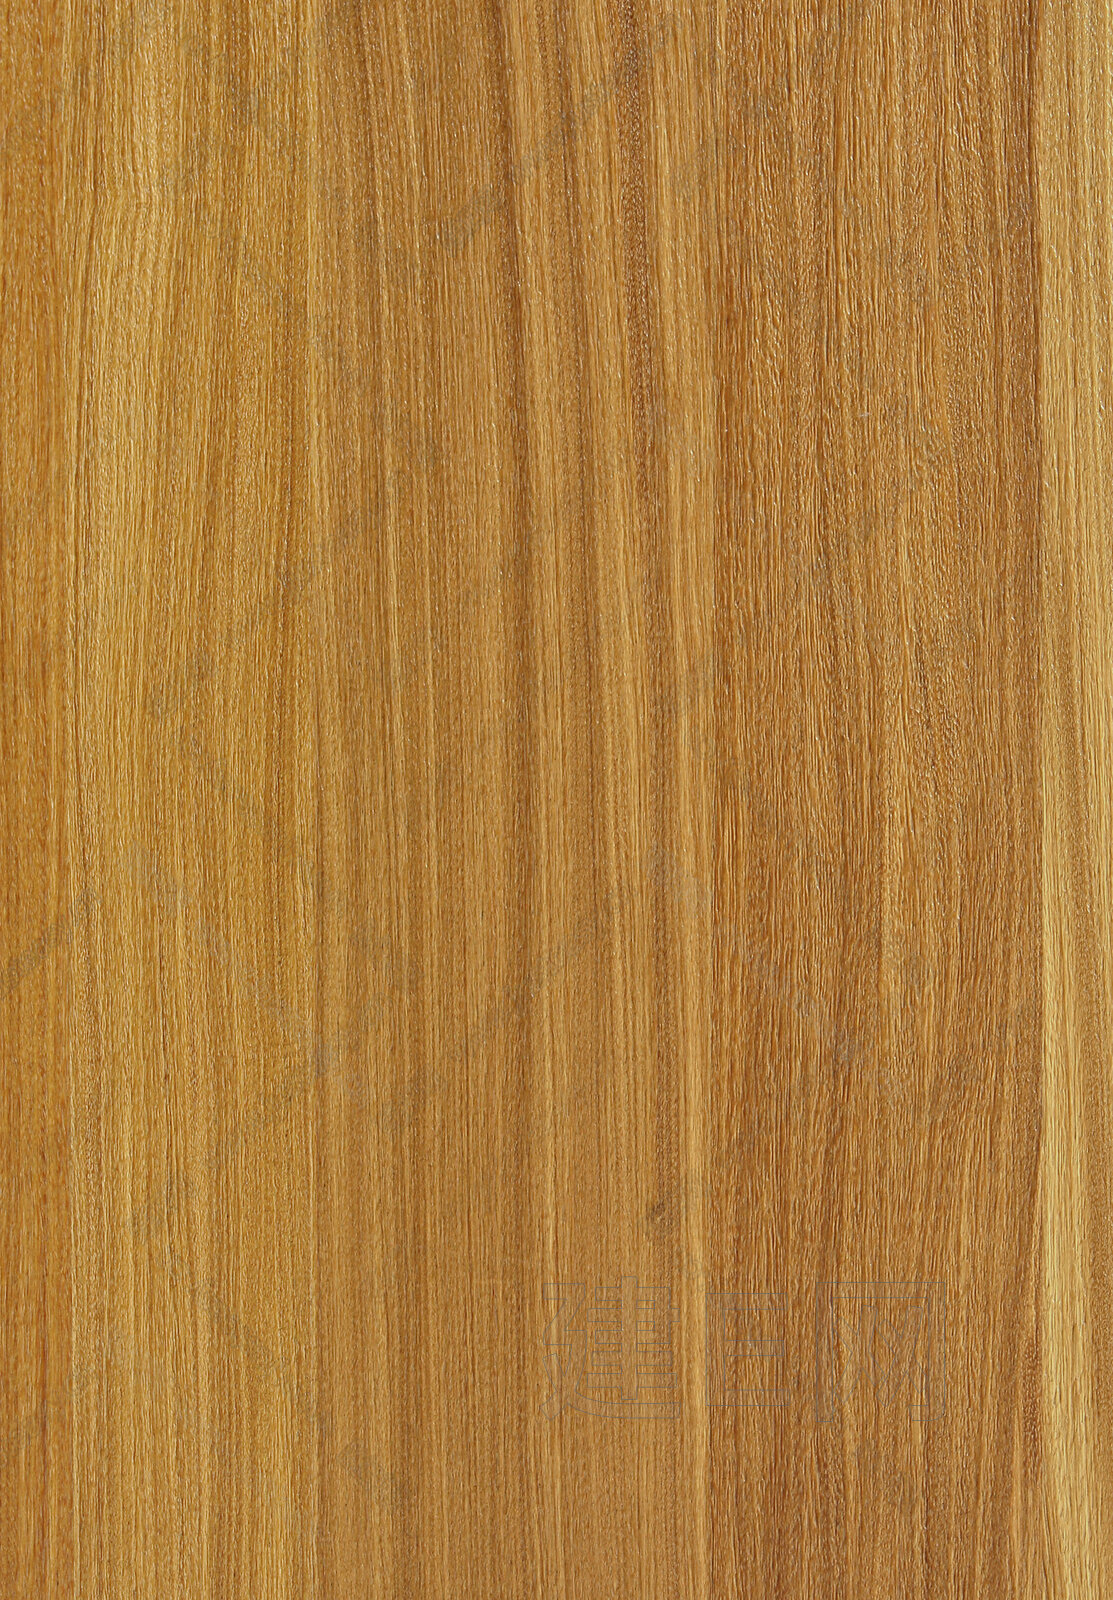 原木色木纹木饰面贴图3d贴图